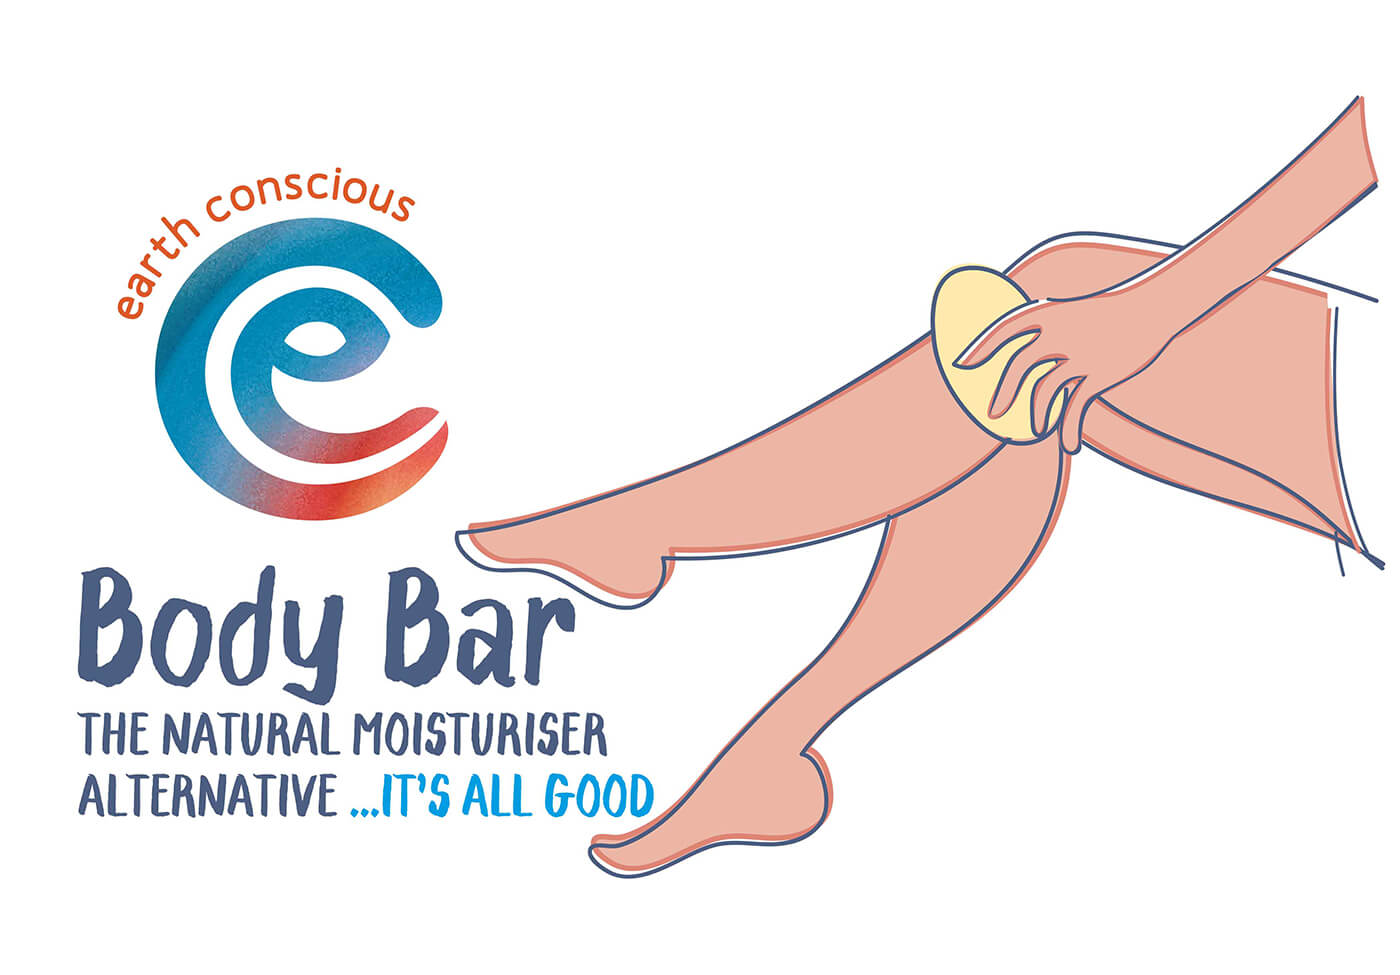 Legs Natural Moisturiser Body Bar